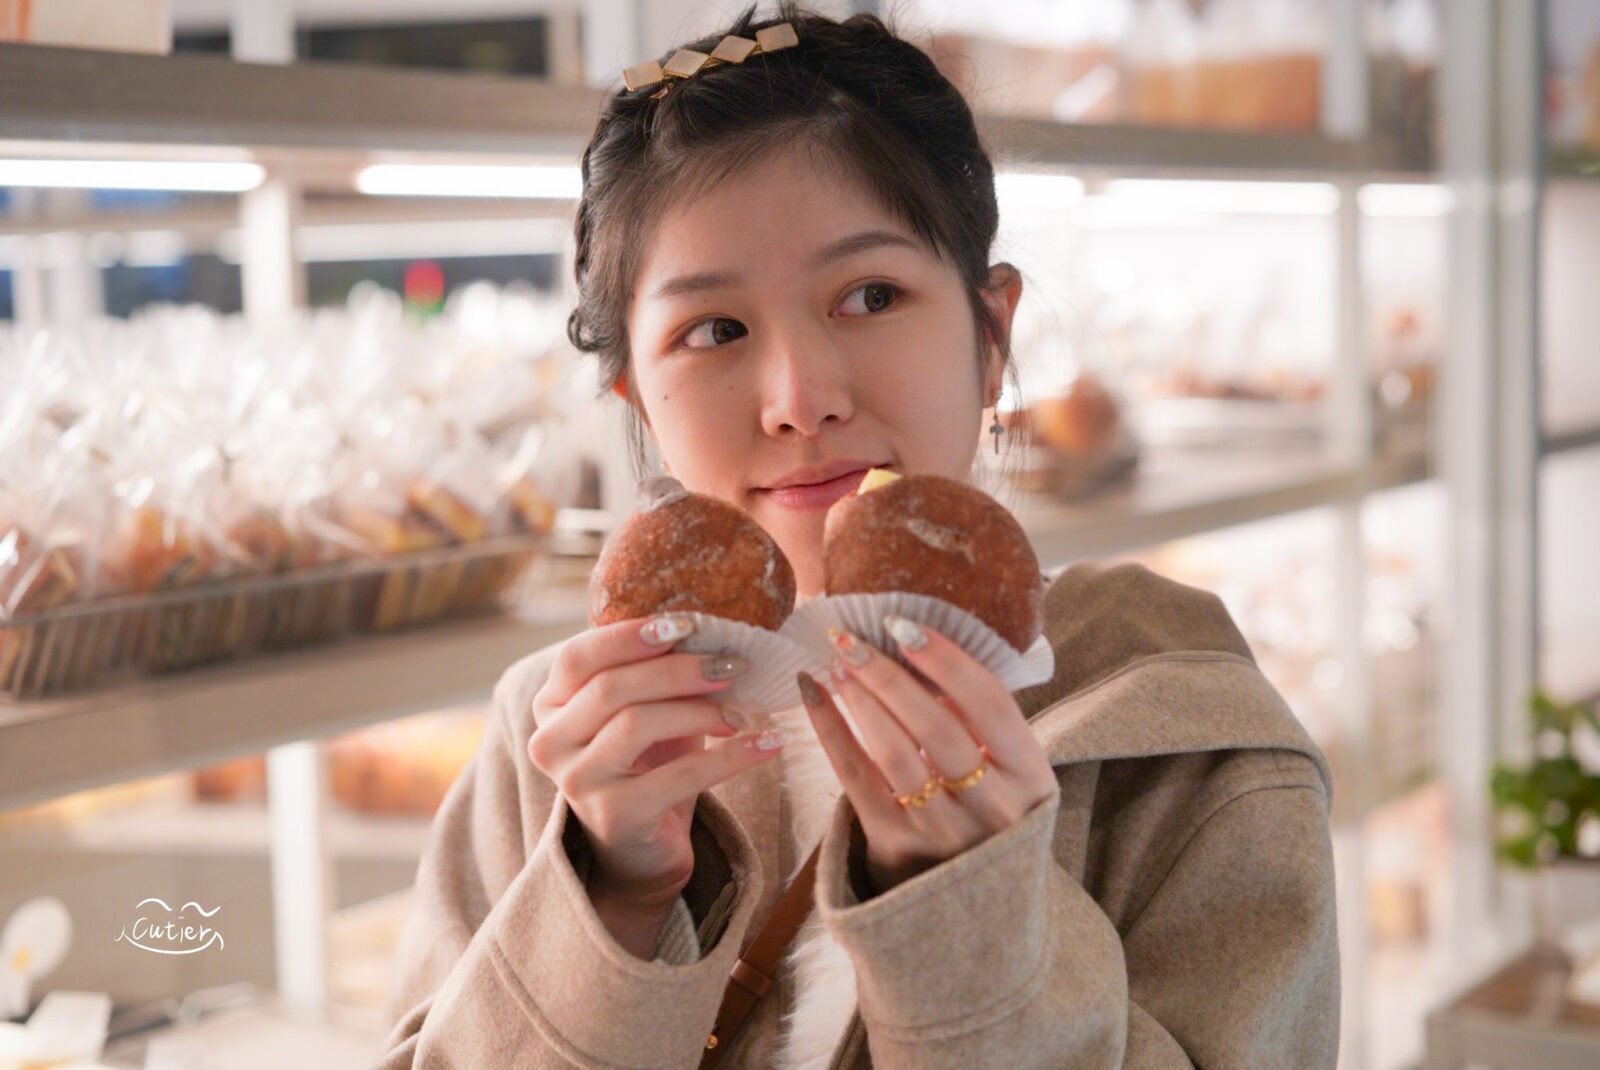 馥漫麵包花園 不用出國也能吃到日本最夯「生甜甜圈」  台中名店進軍雙北! 板橋美食/台北美食/台中美食